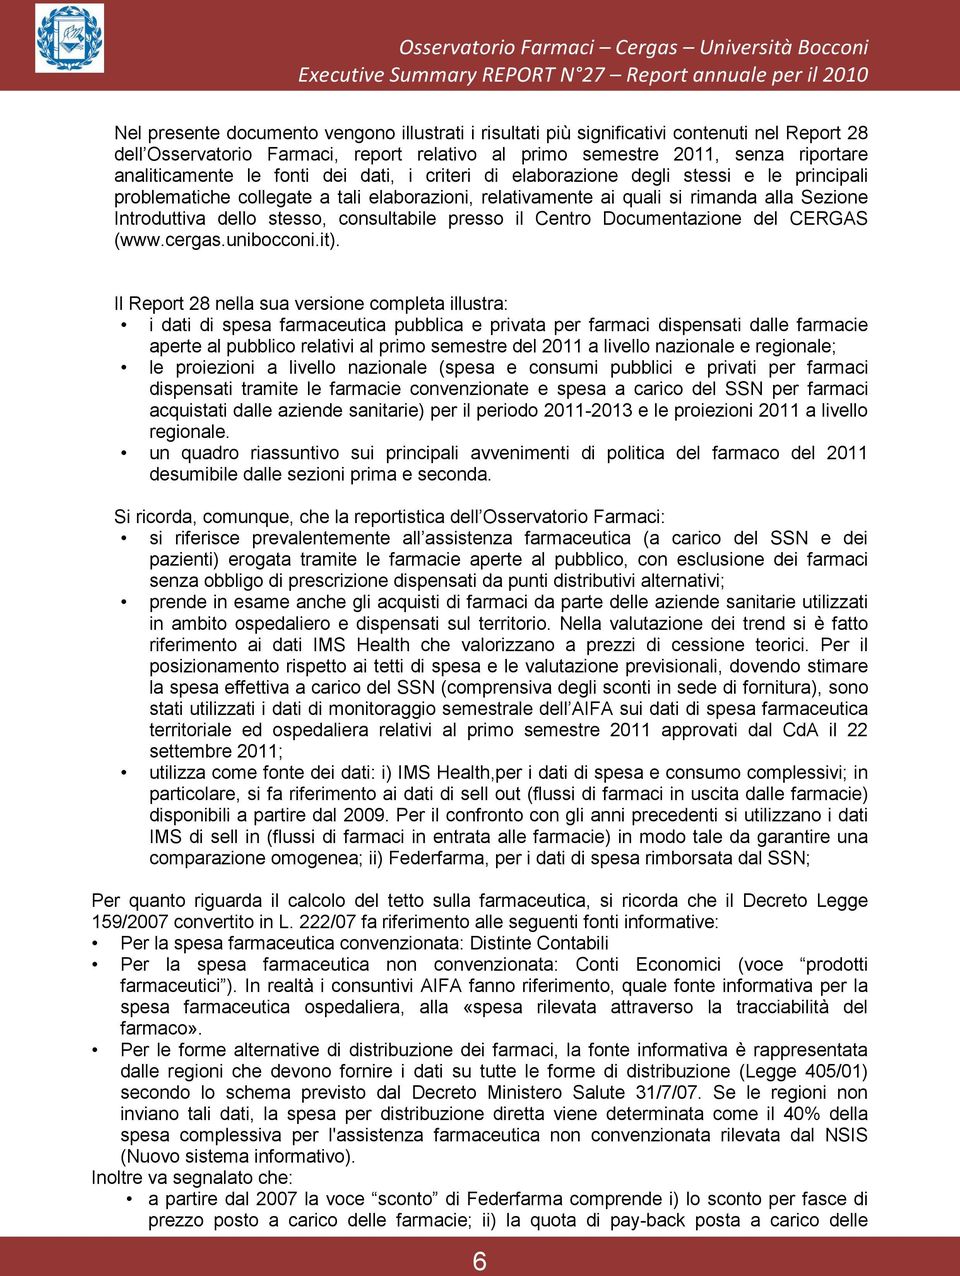 rimanda alla Sezione Introduttiva dello stesso, consultabile presso il Centro Documentazione del CERGAS (www.cergas.unibocconi.it).